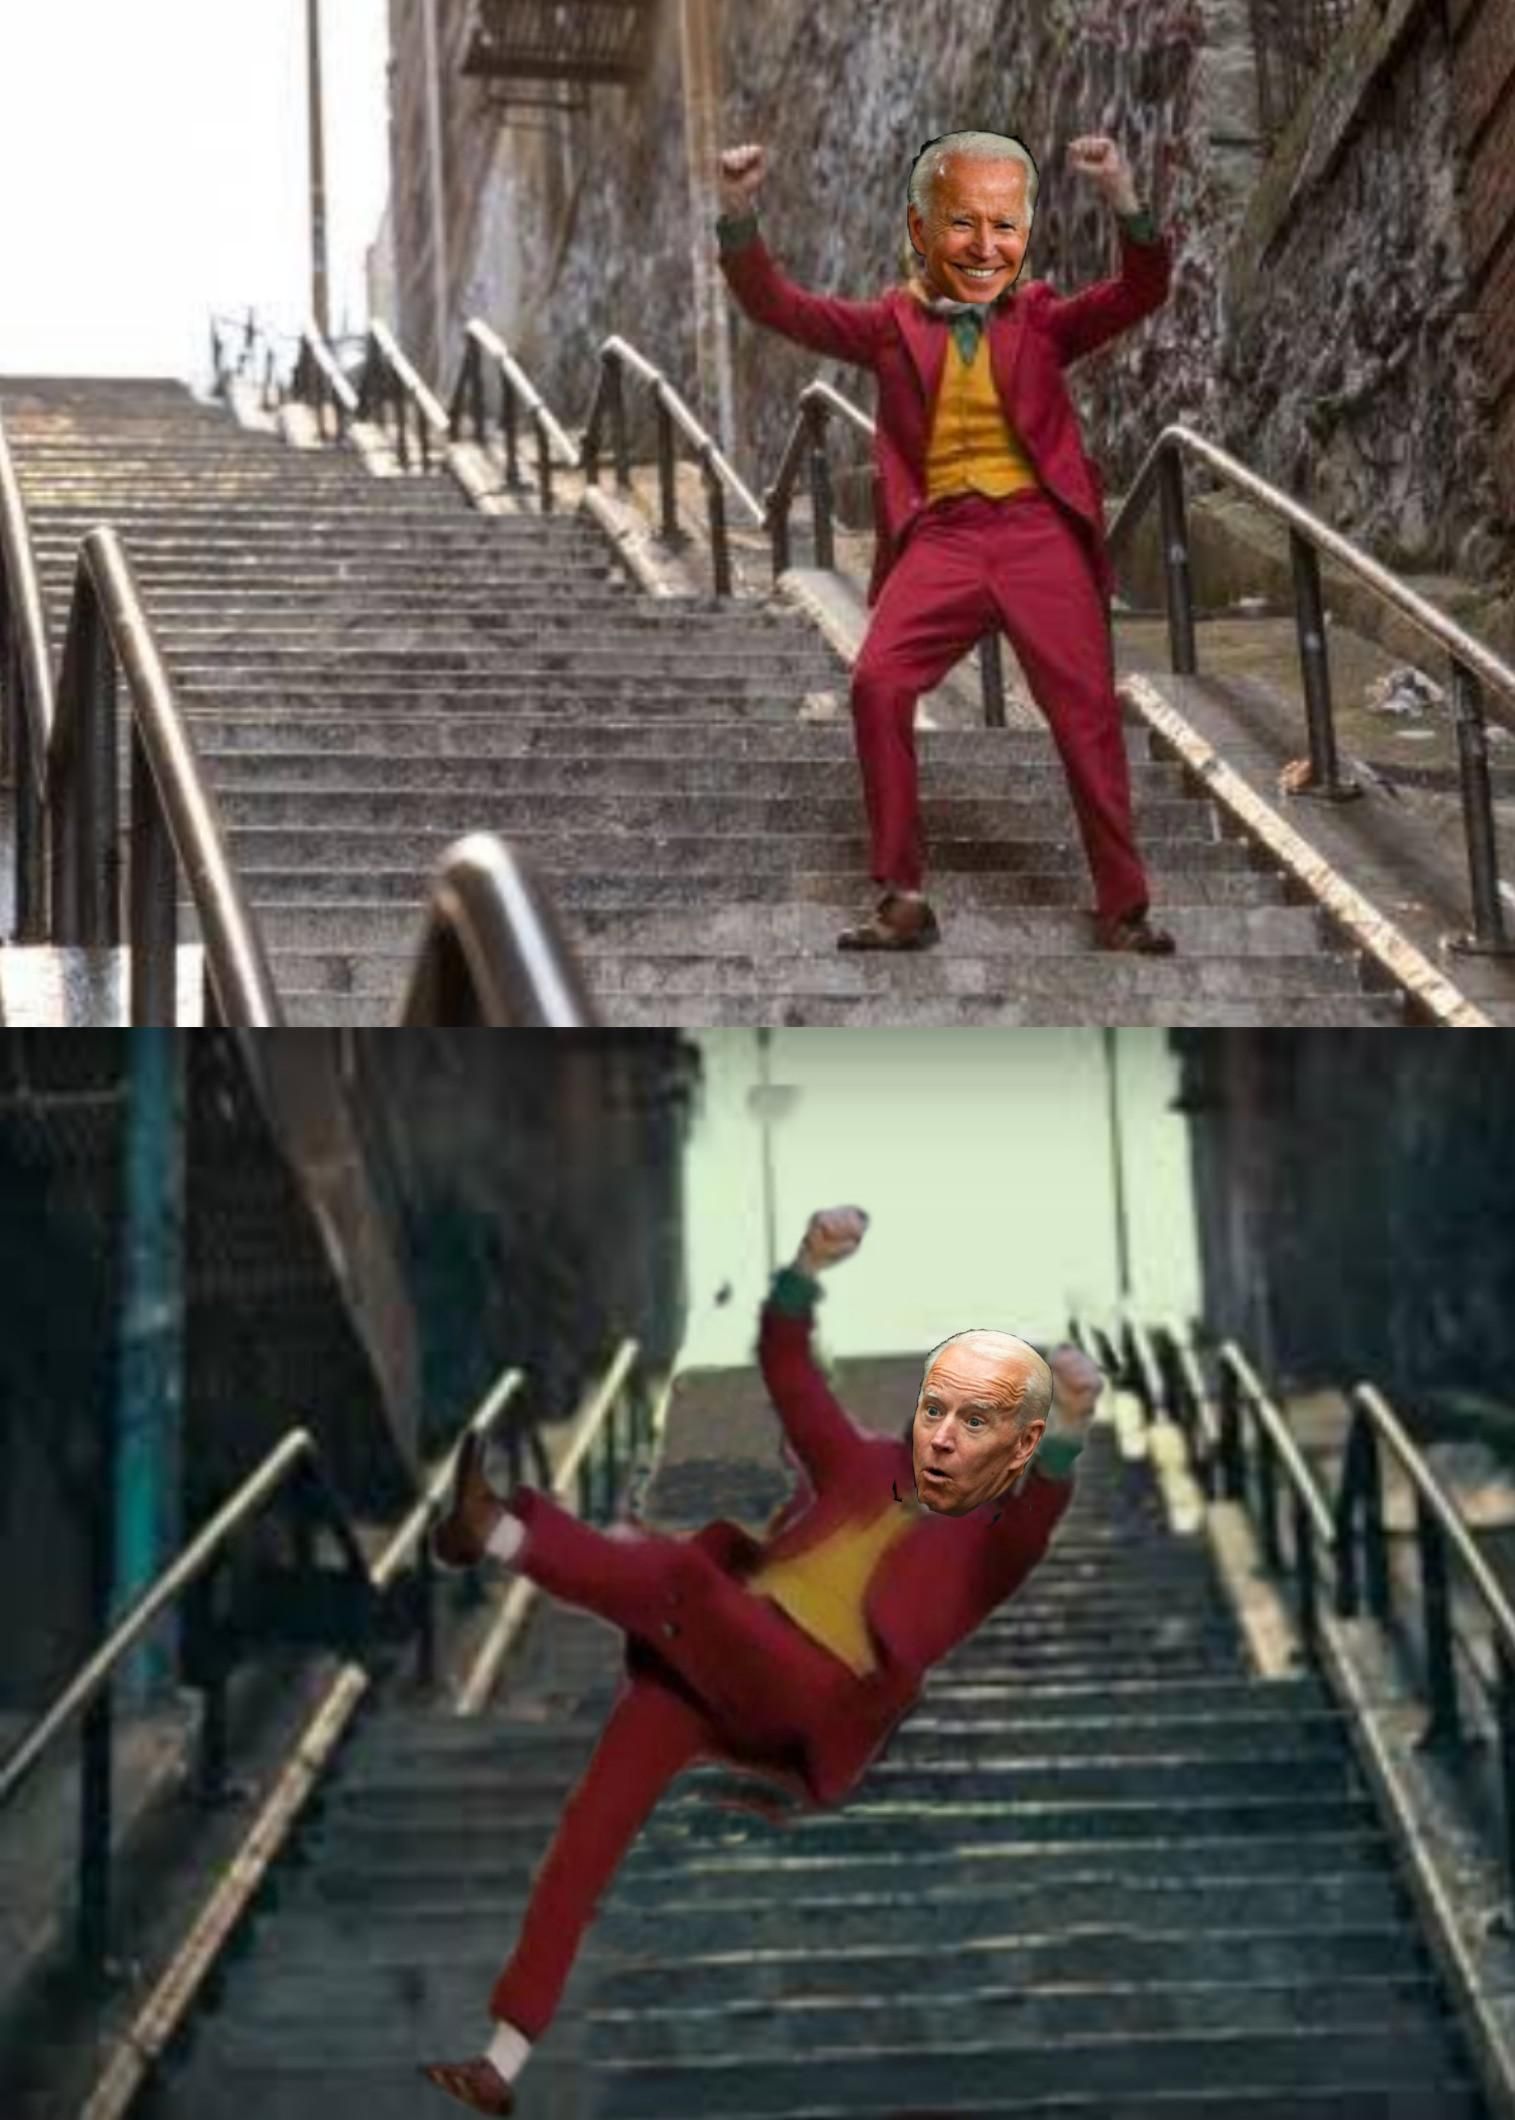 Watch your step Joe